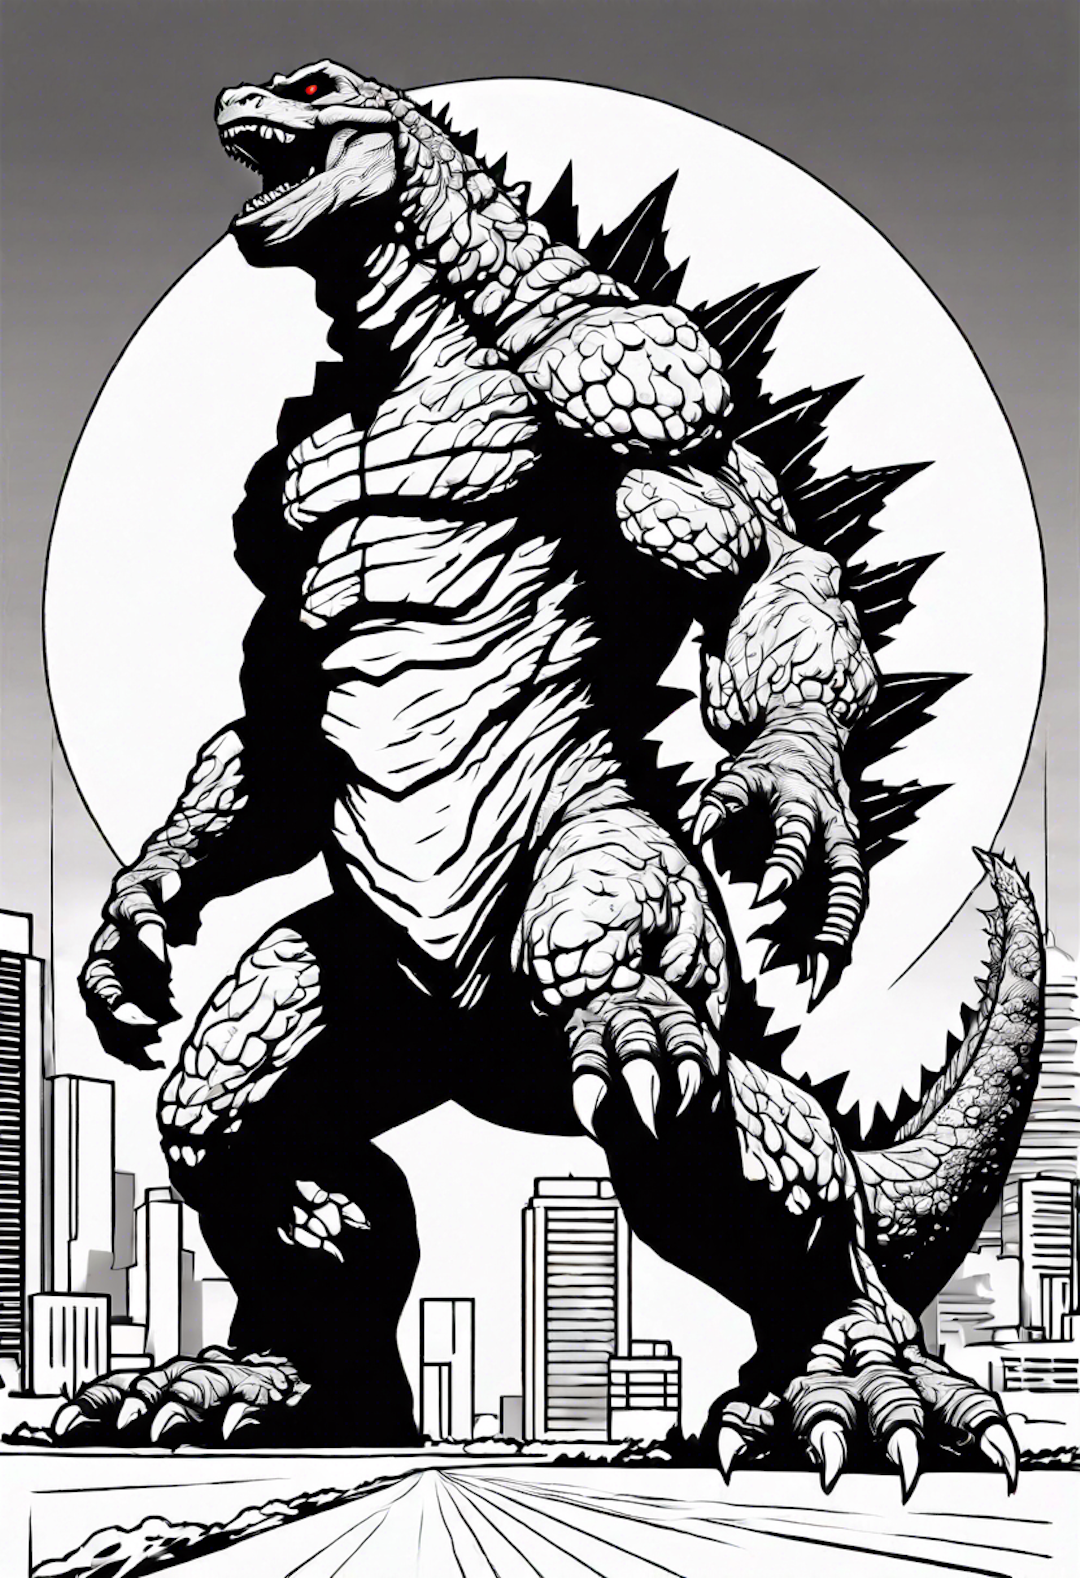 Godzilla the fierce titan